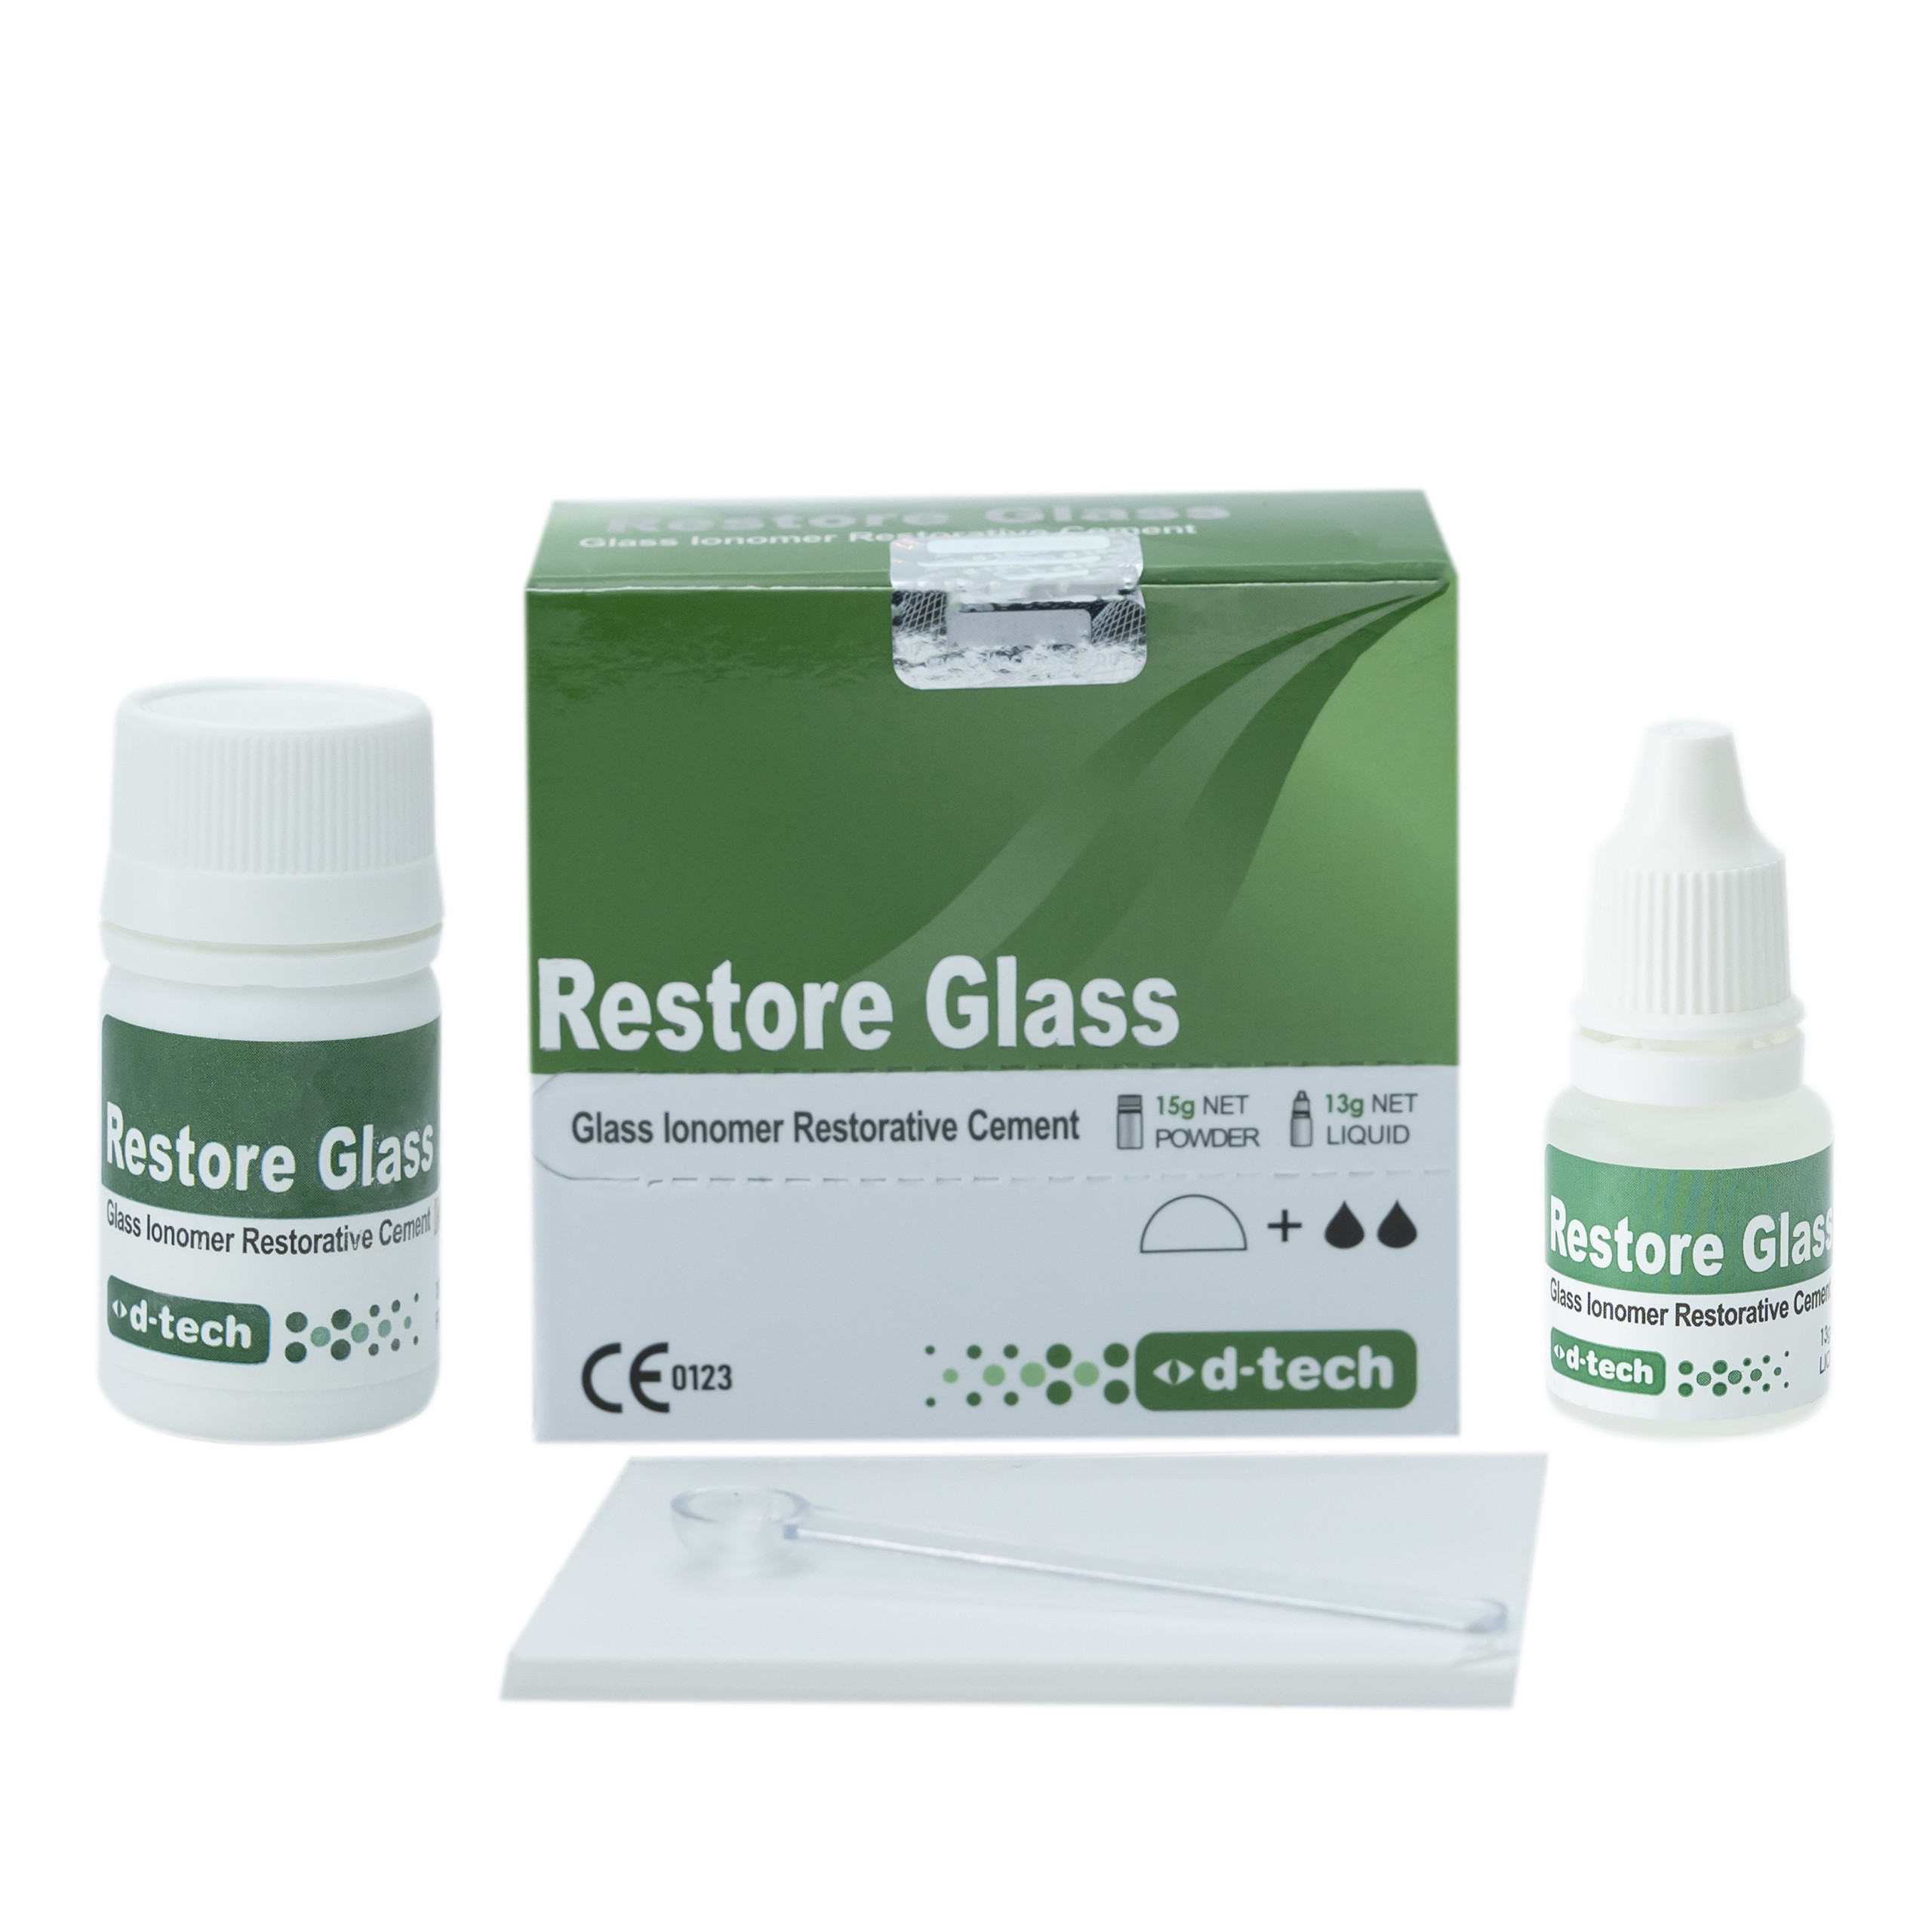 Aggressiv Den fremmede oase Buy D-Tech Restore glass Online at Best Prices | Dentganga.com